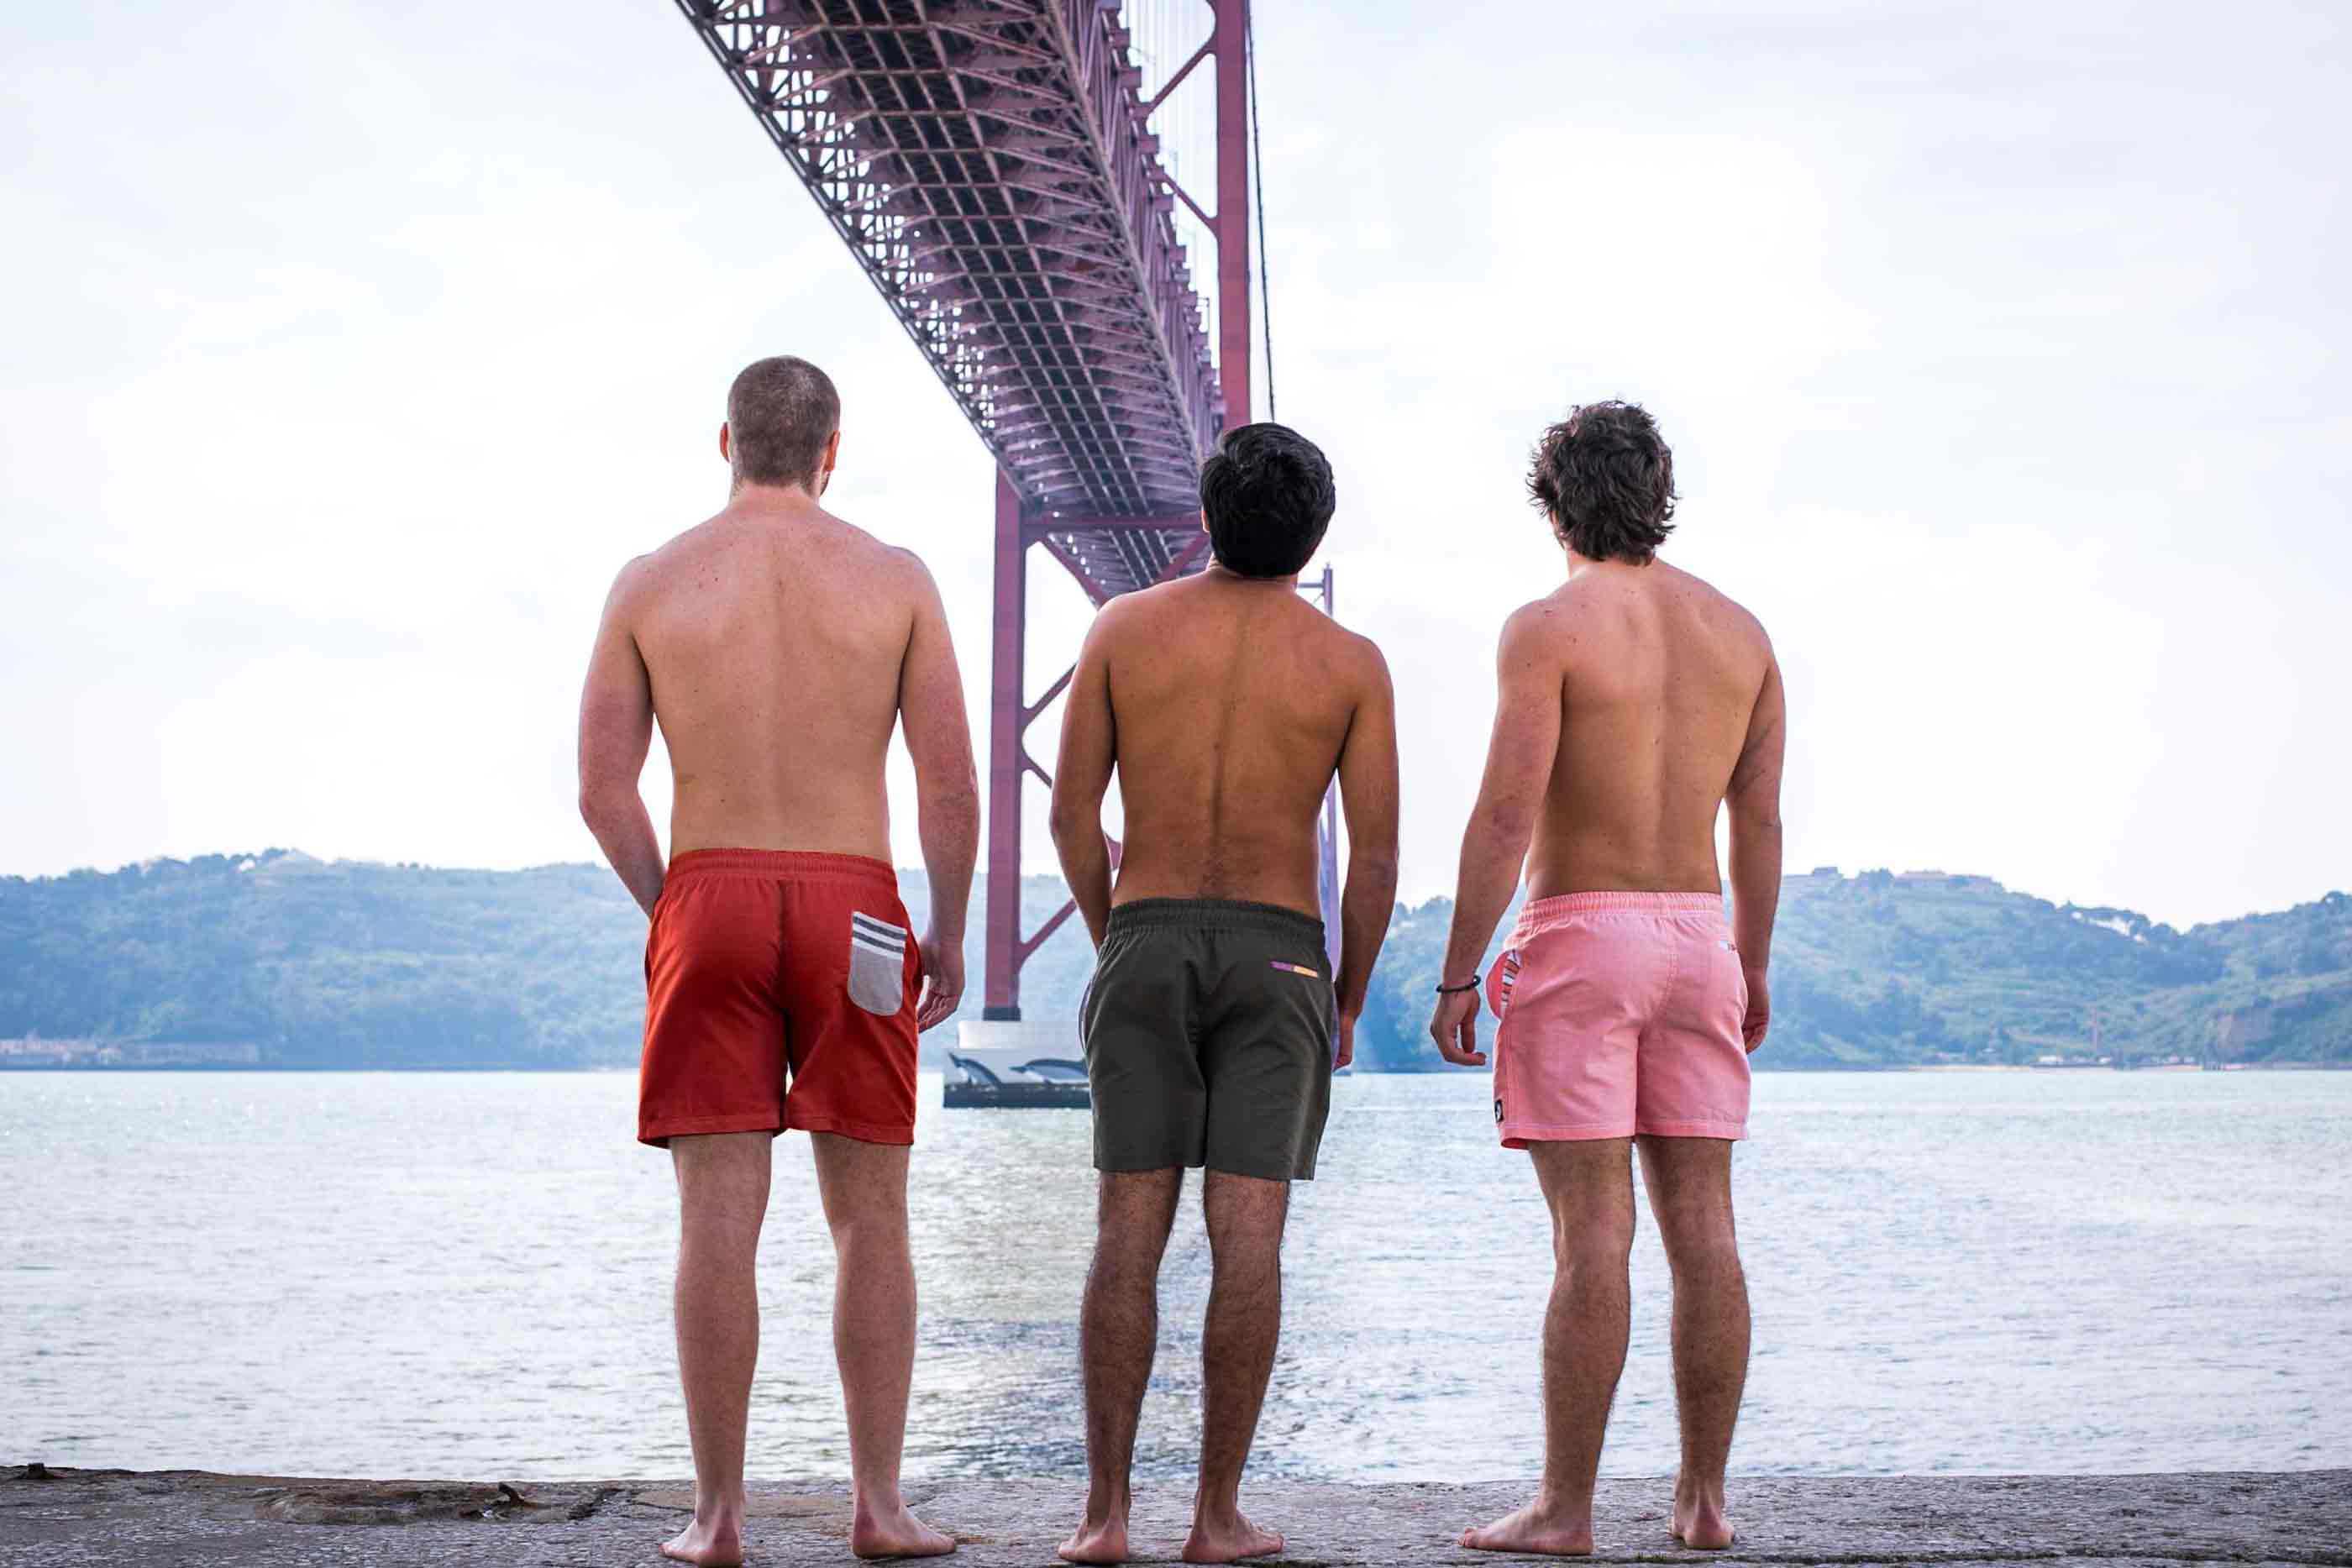 Ao fundo, o mar, colinas e por cima a ponte 25 de abril. Três rapazes de costas com calções de banho de cores diferentes.